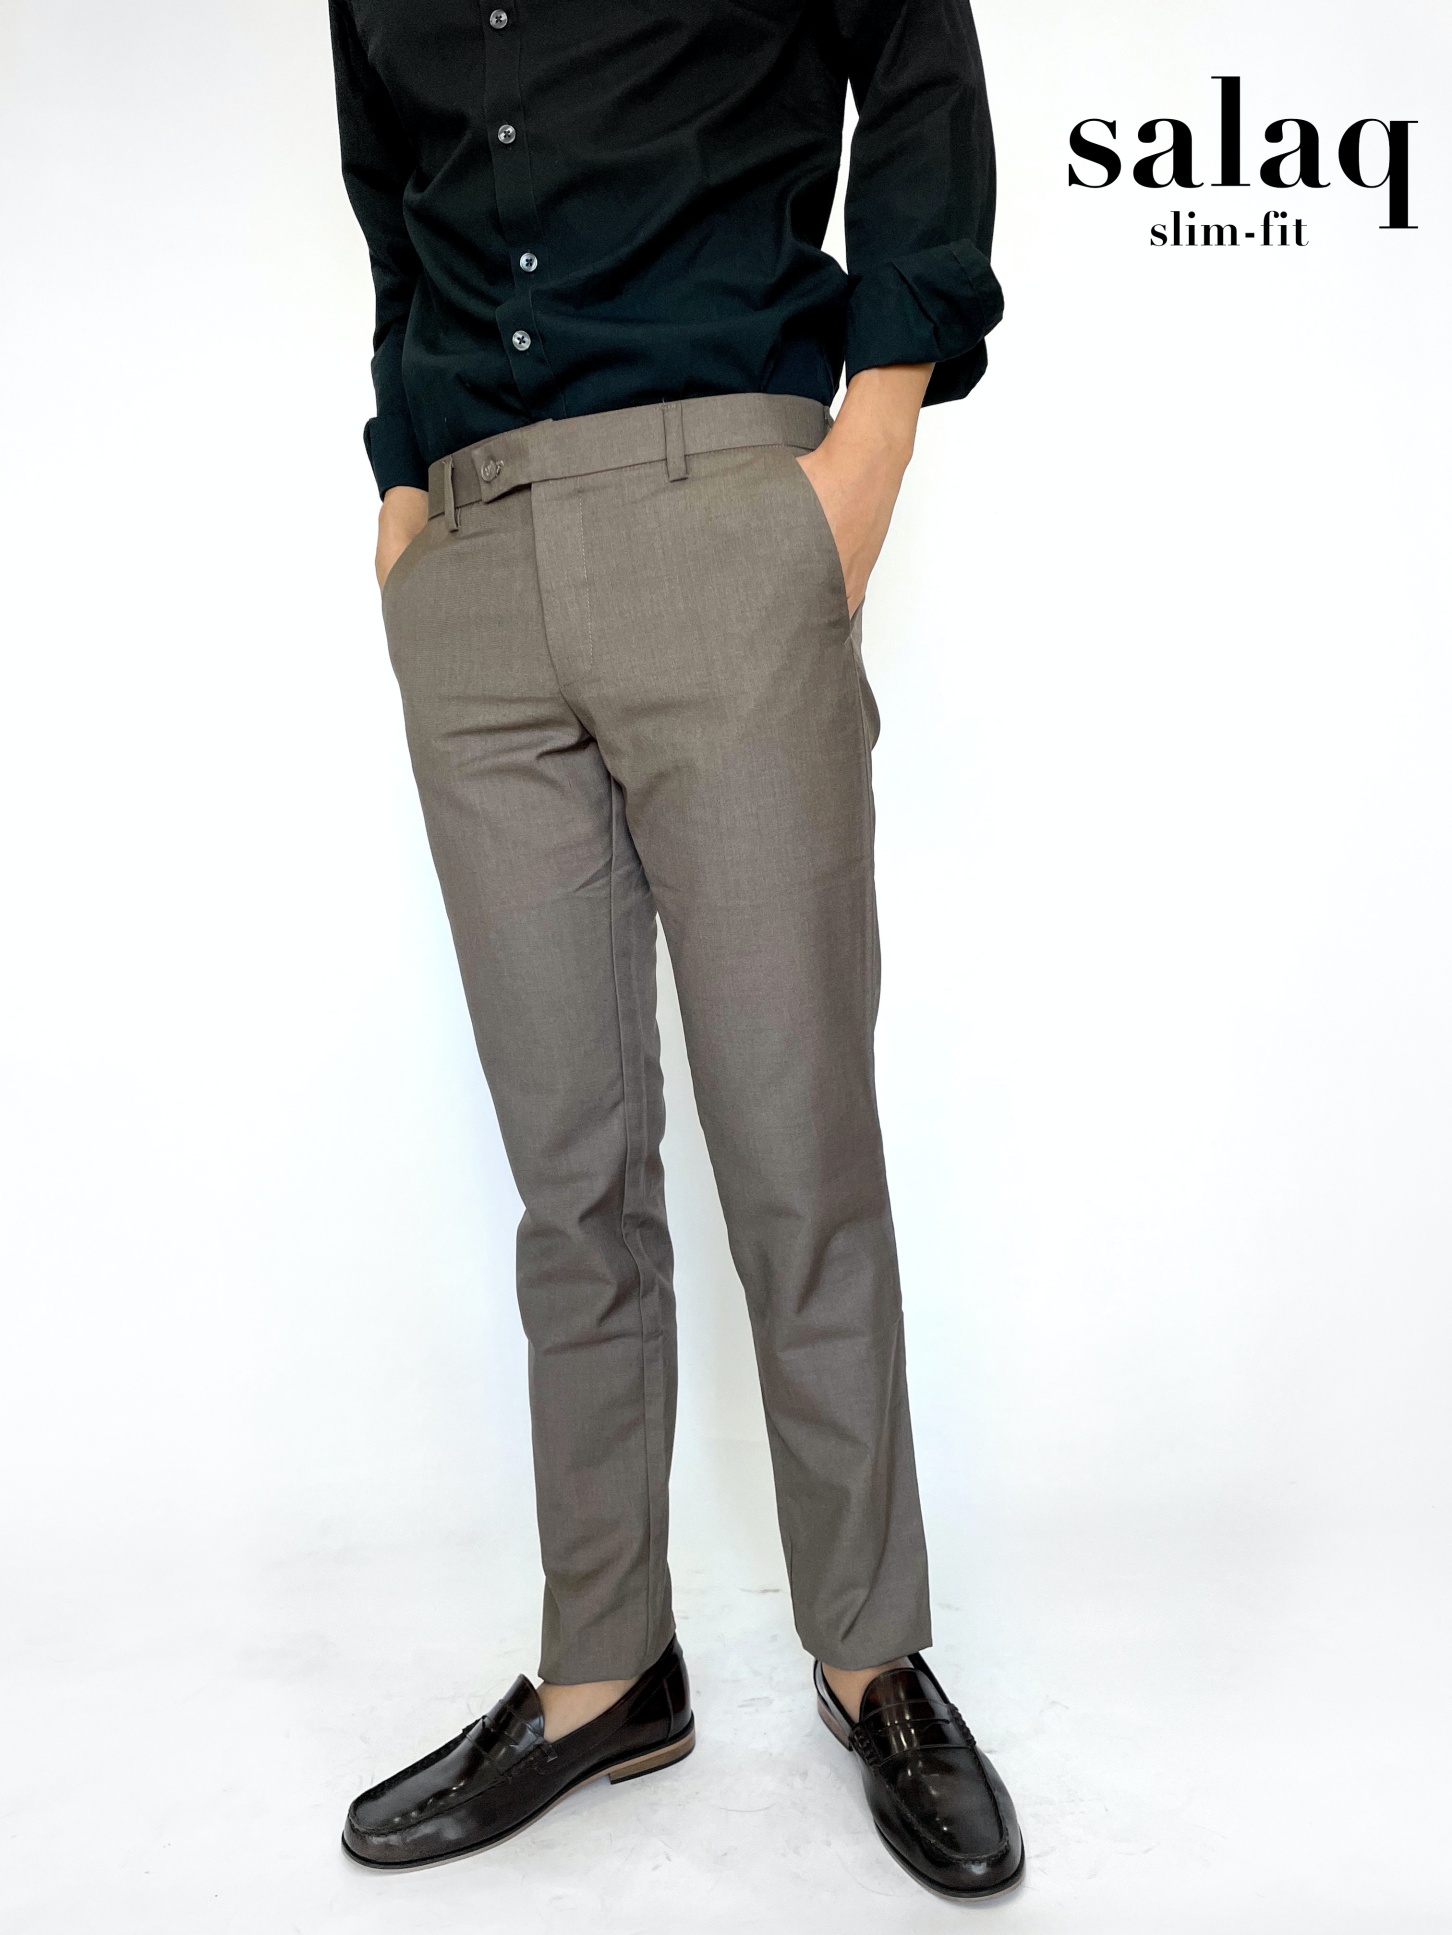 salaq [แจกโค้ดส่วนลด] กางเกงสแล็คทำงาน ผ้าตัดสูททรงกระบอกเล็ก สีเบจเข้ม กางเกงขายาว กางเกงสุภาพผู้ชาย  กางเกงทางการ